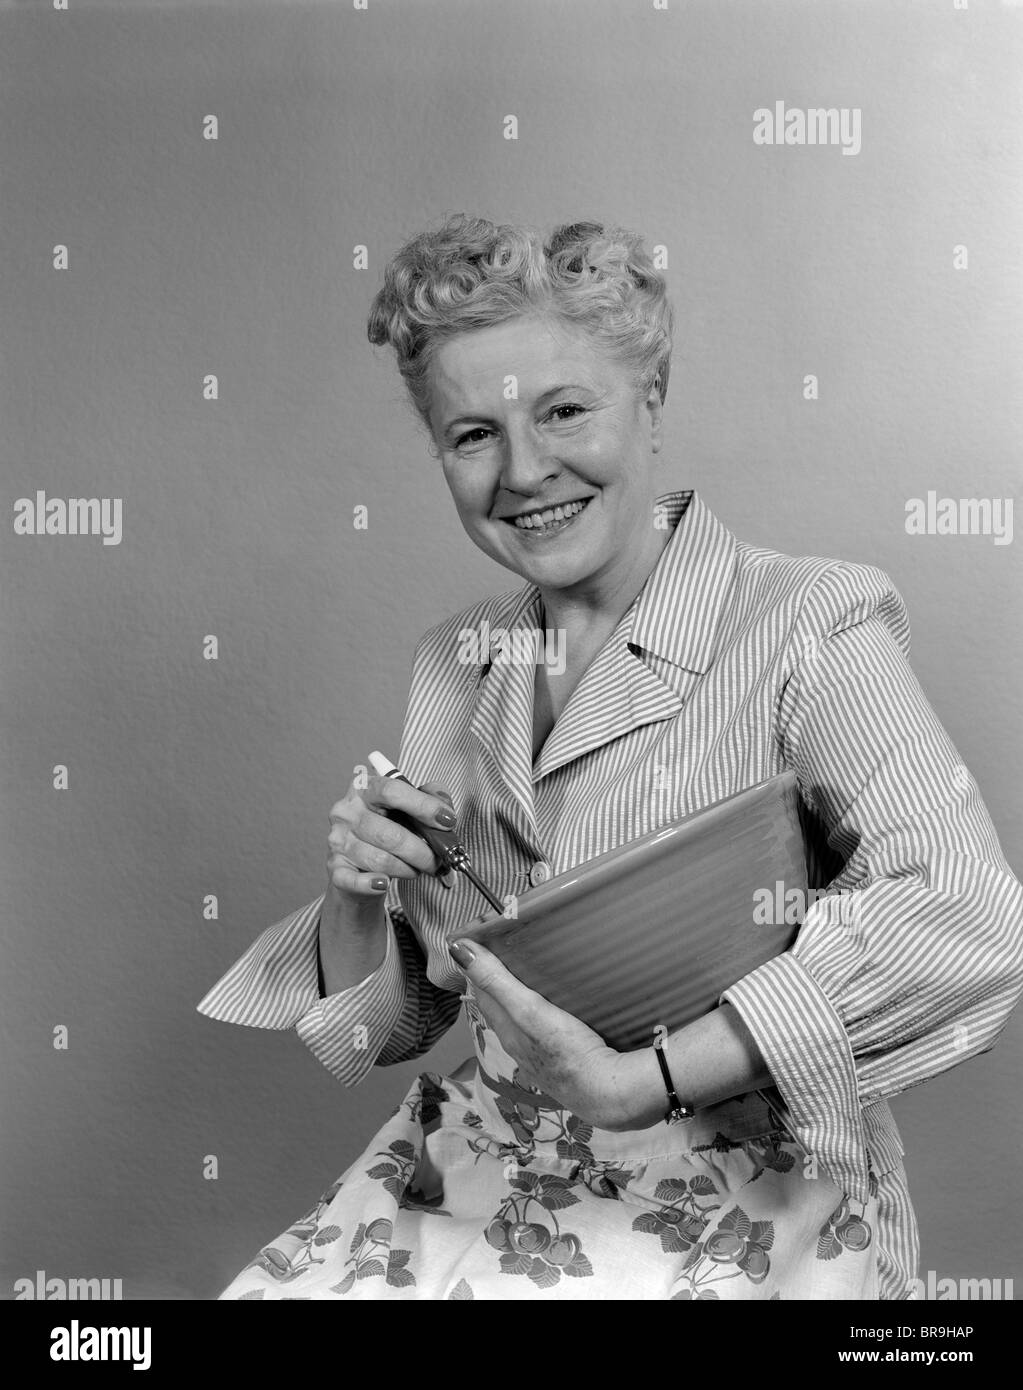 Negli anni quaranta anni cinquanta donna sorridente casalinga tenendo un recipiente di miscelazione guardando la fotocamera Foto Stock